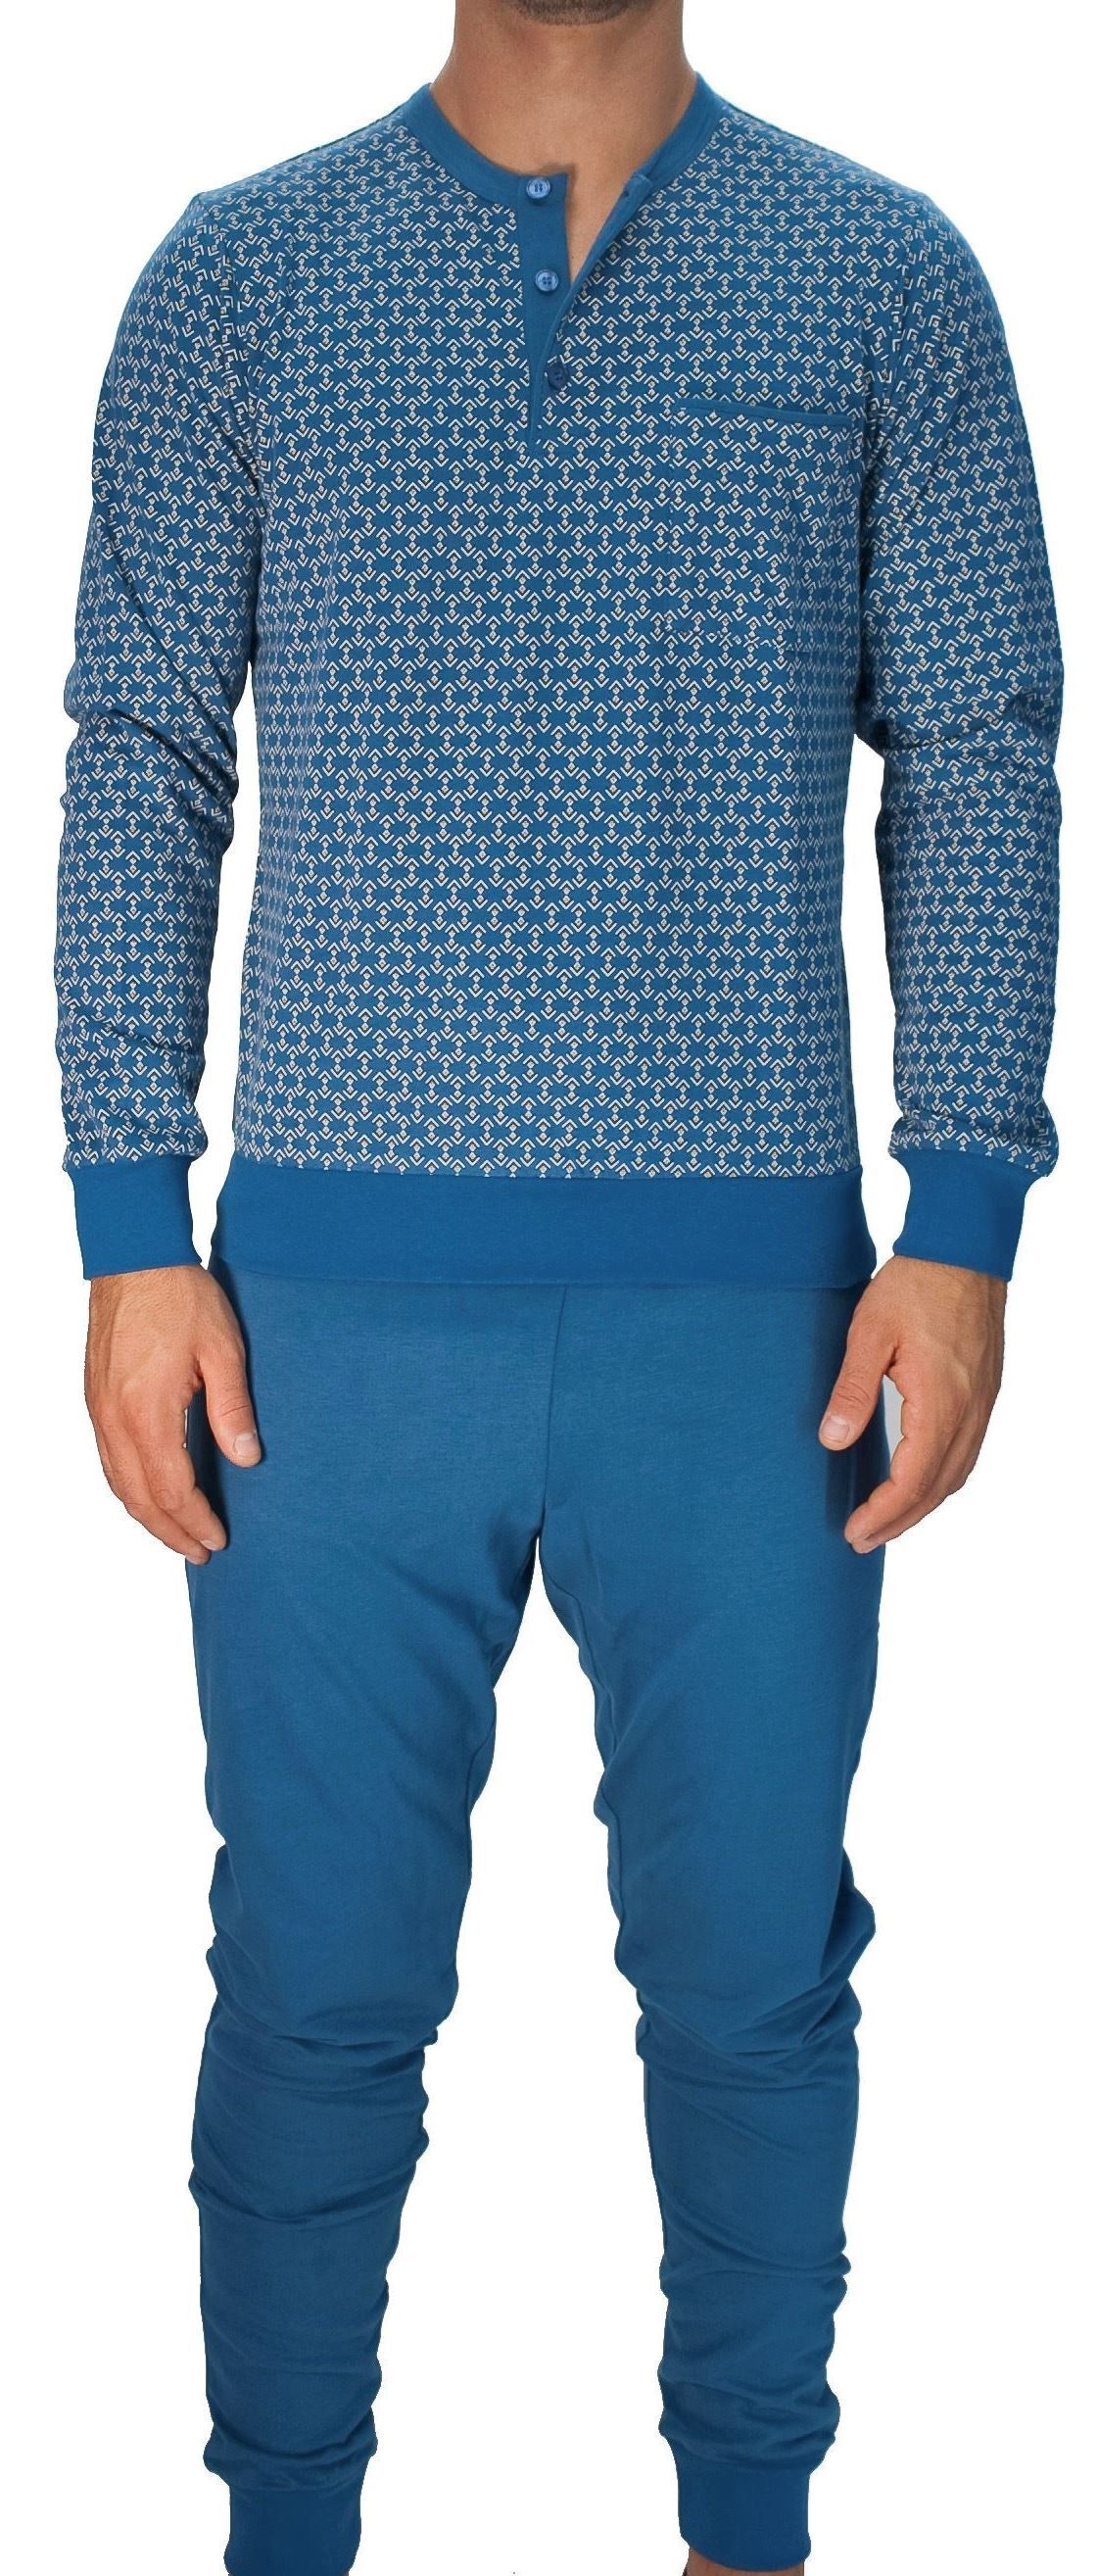 Picture of Men's Cotton Pyjamas, 3 buttons